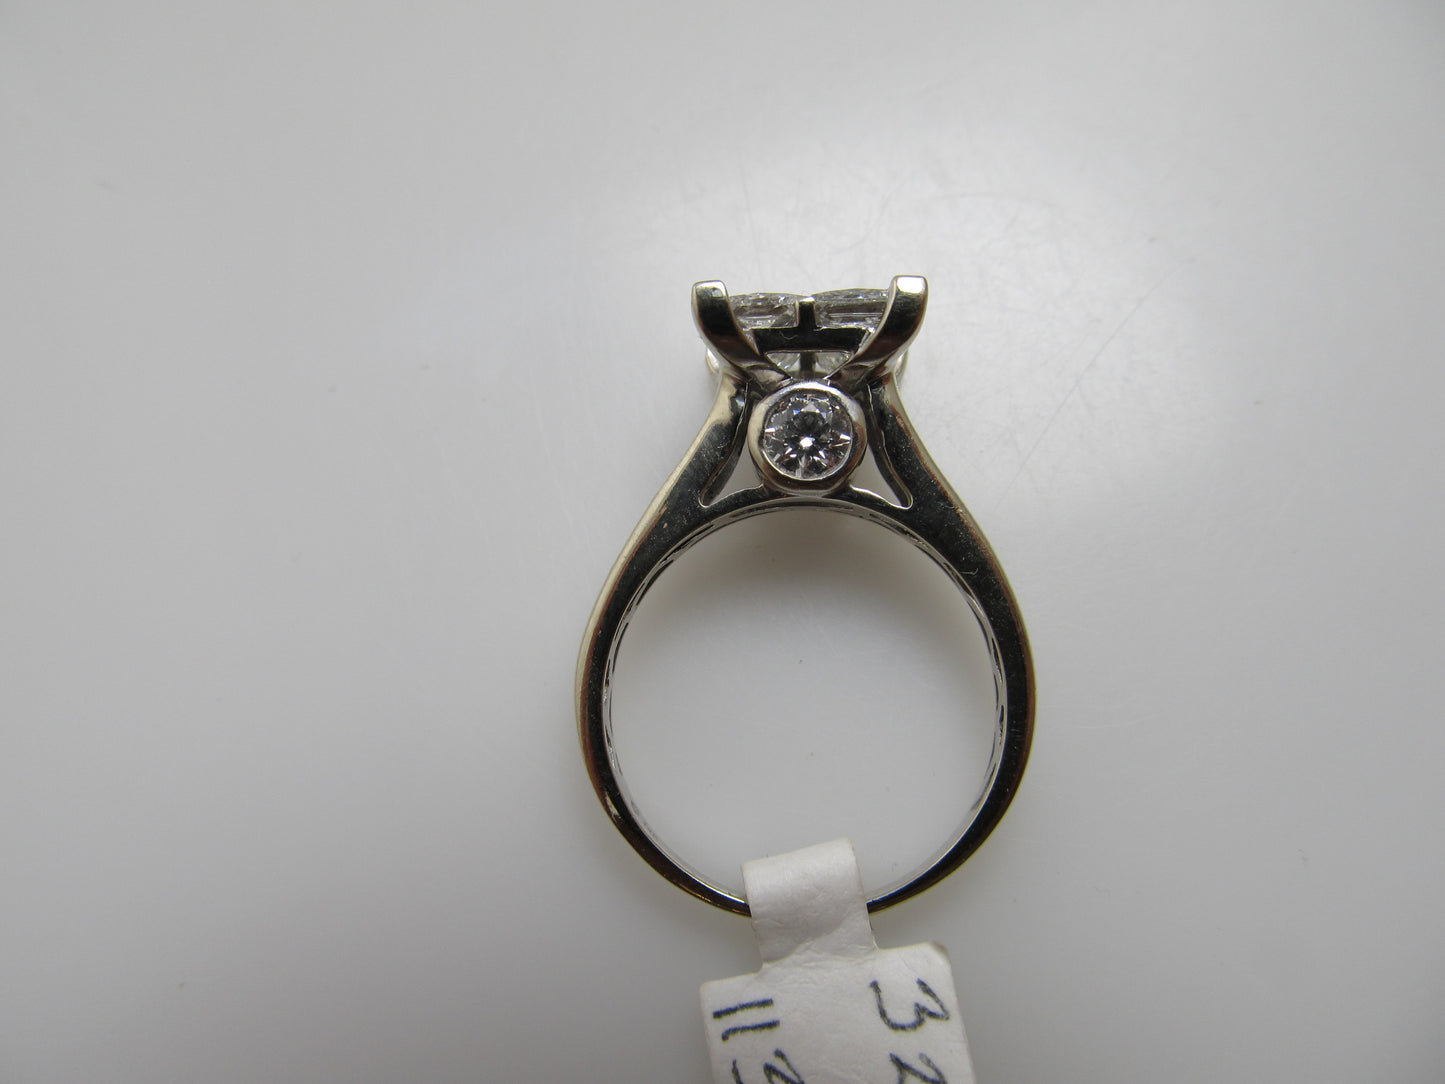 Modern 14k white gold 1.70ct round princess cut engagement ring